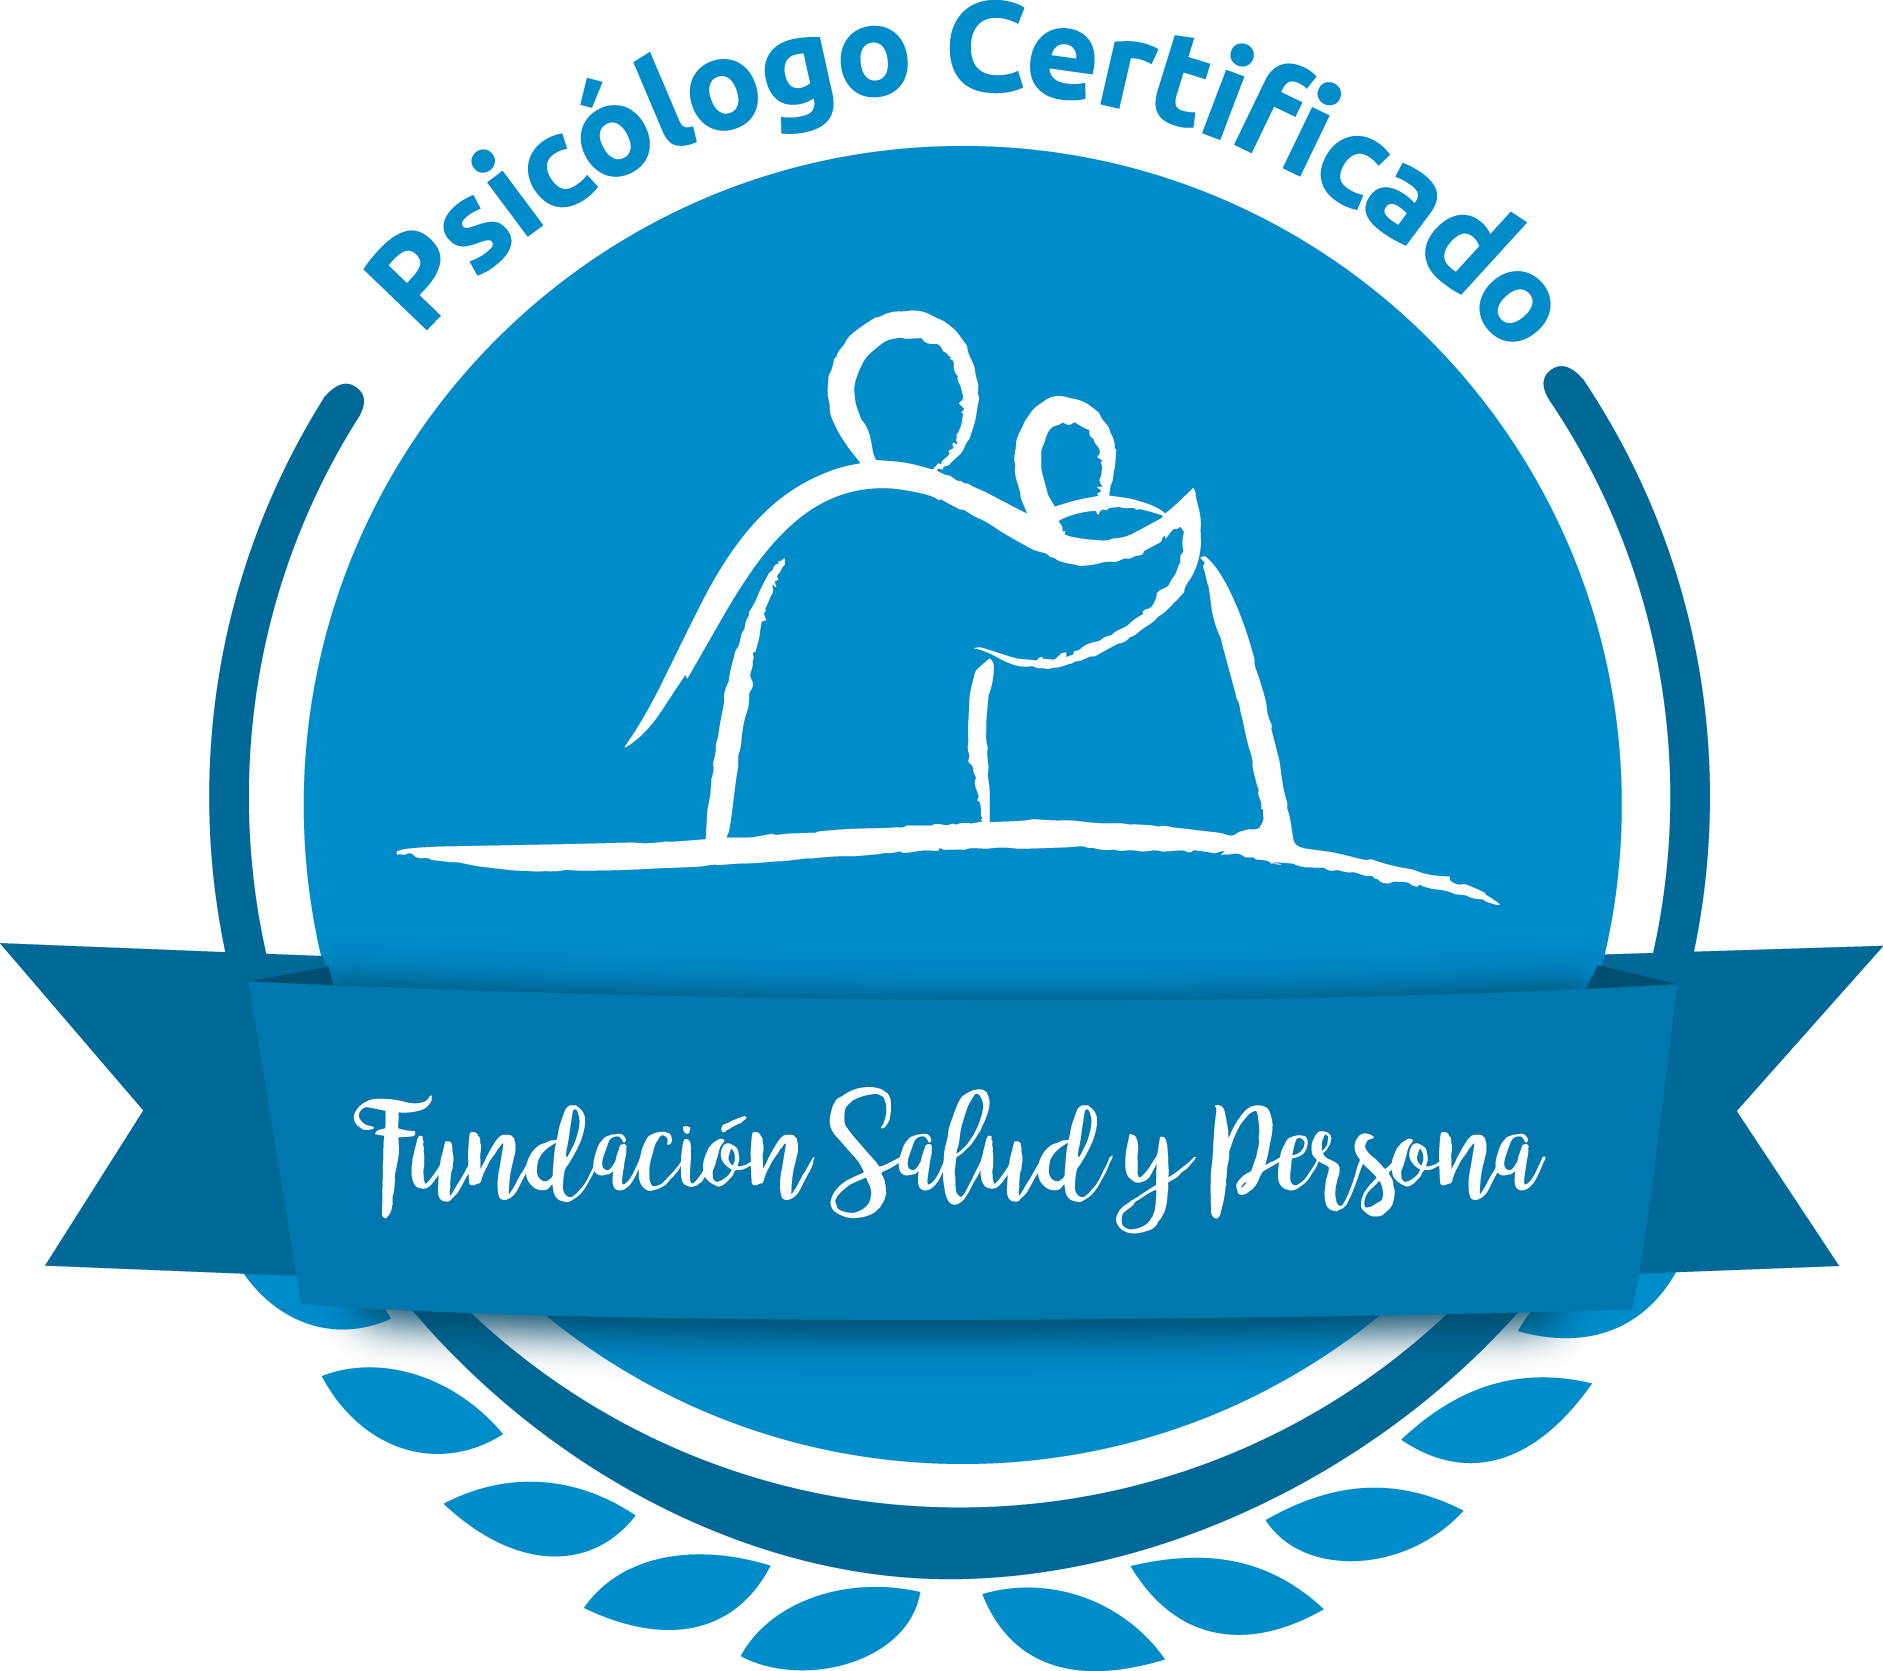 psicologo certificado